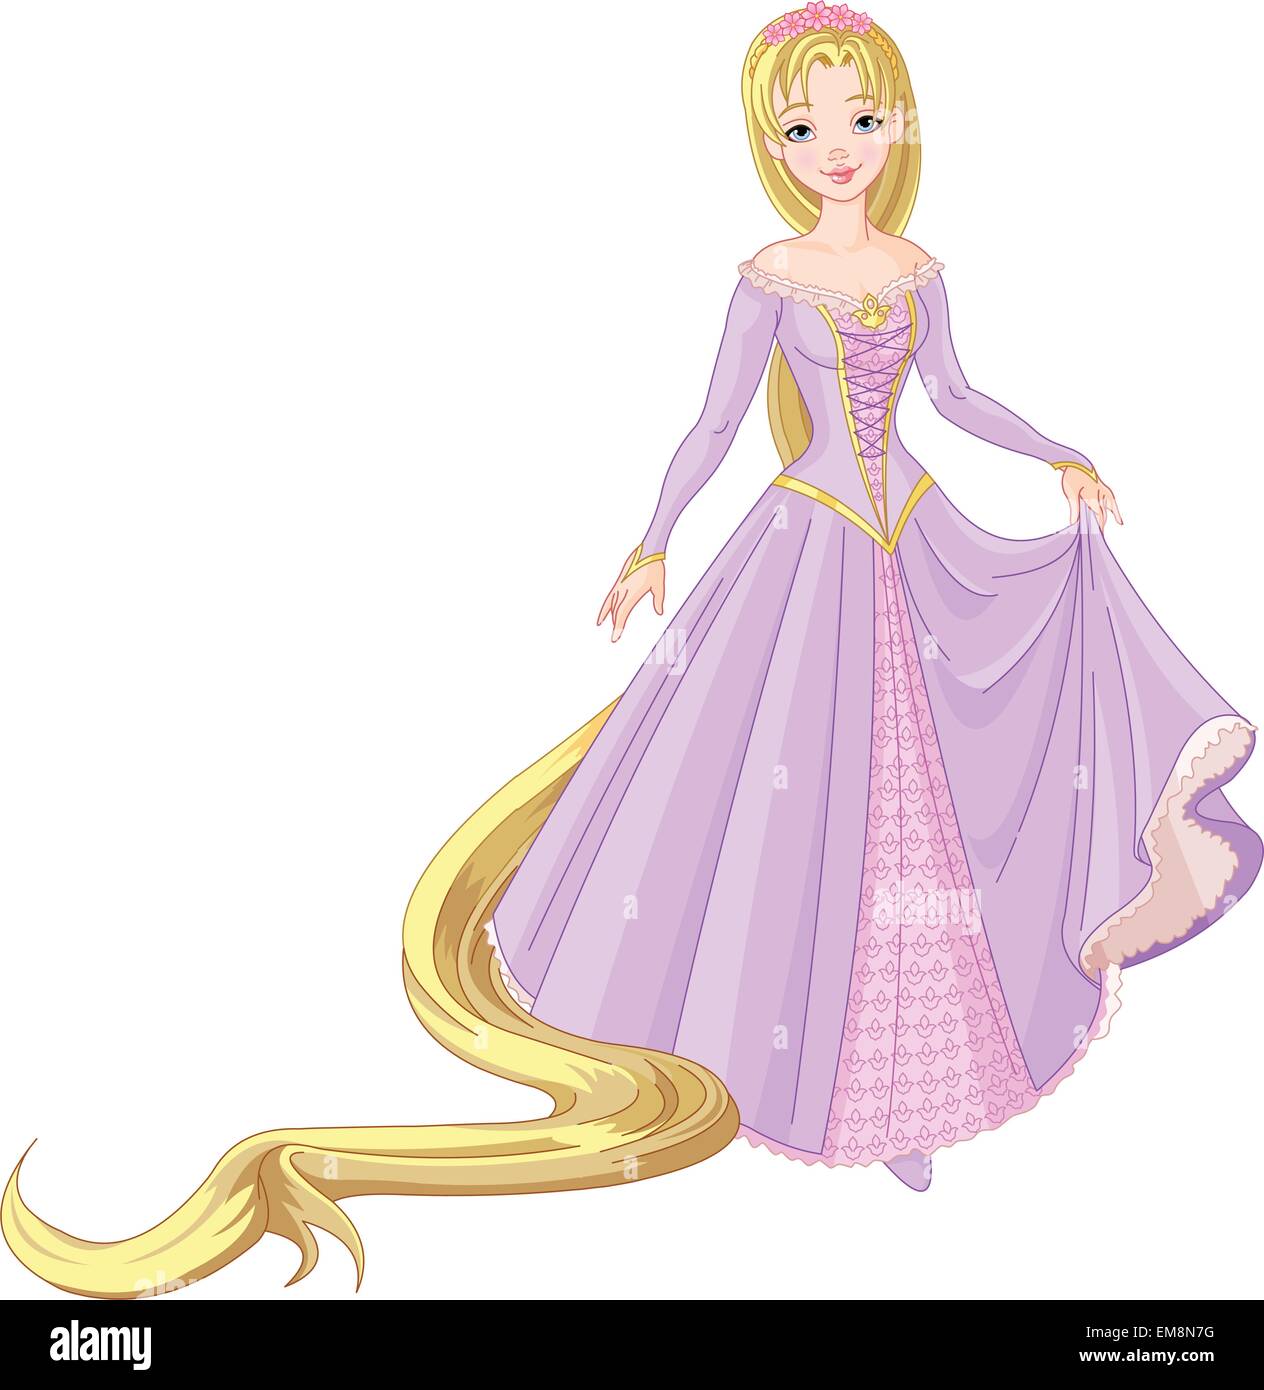 Beautiful princess Rapunzel Stock Vector Image & Art - Alamy